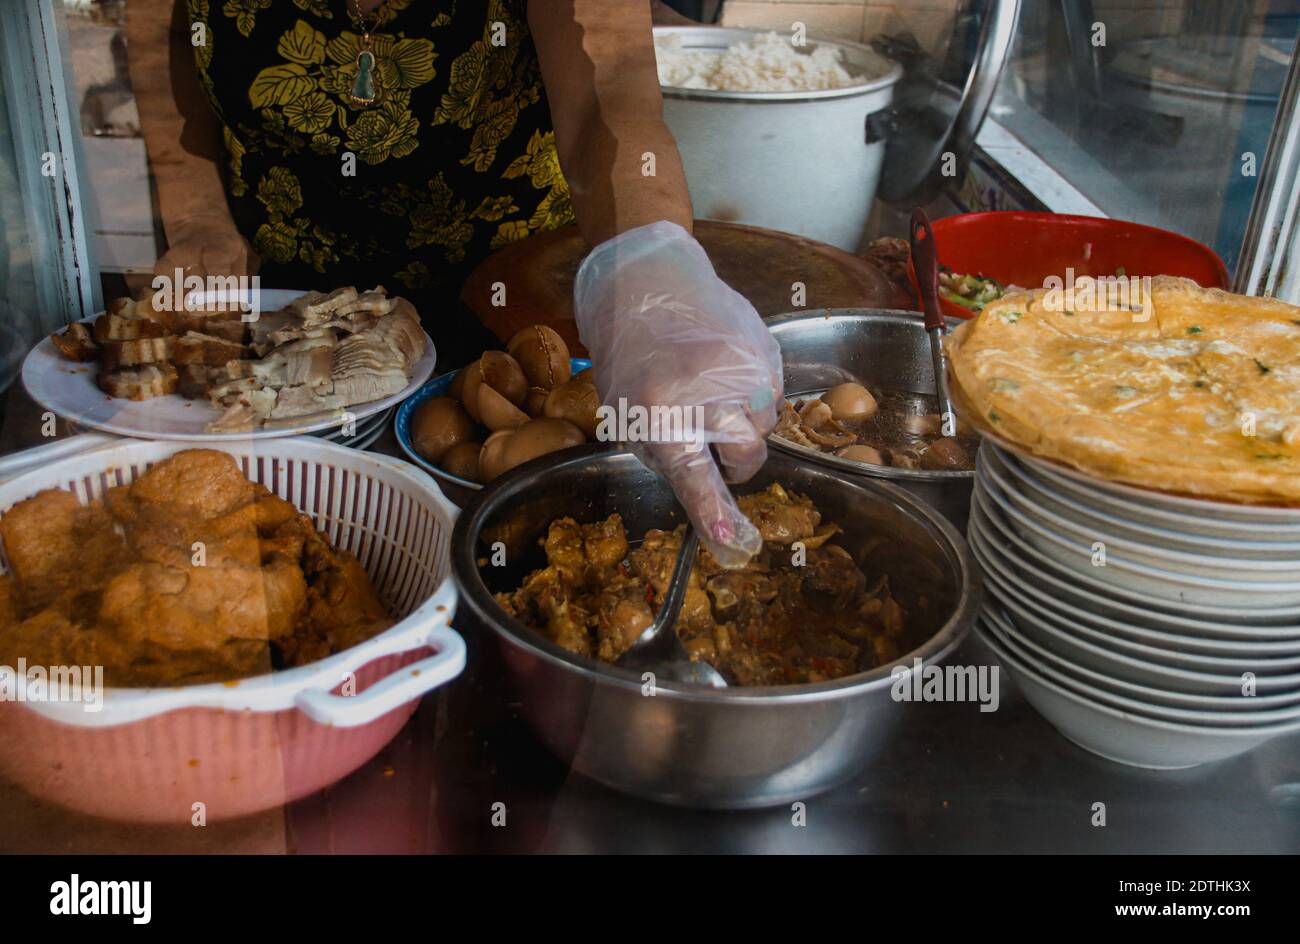 La nourriture vietnamienne locale vendue dans les petits stands de nourriture le long des rues, montre la nourriture locale, la culture et les moyens de subsistance au Vietnam Banque D'Images